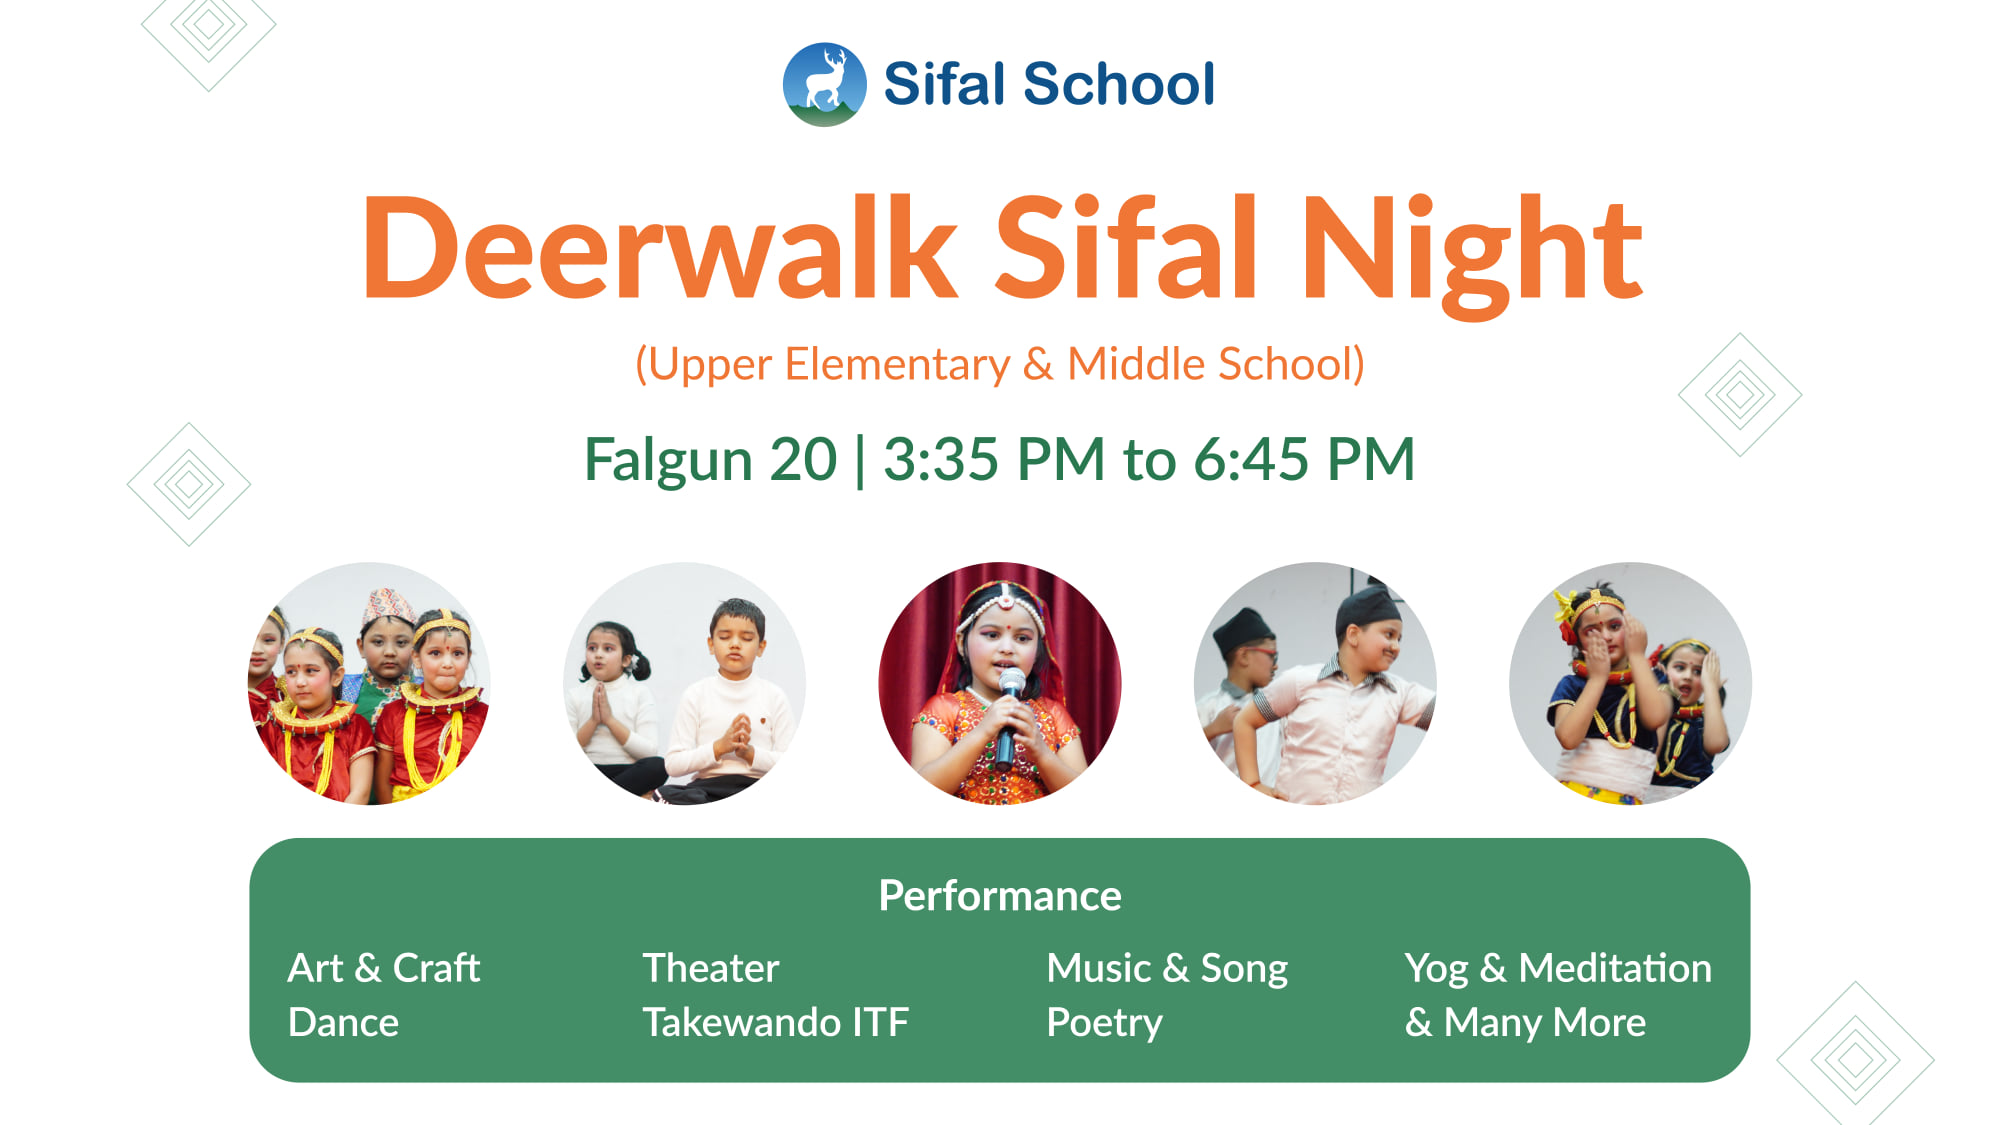 Deerwalk Sifal Night